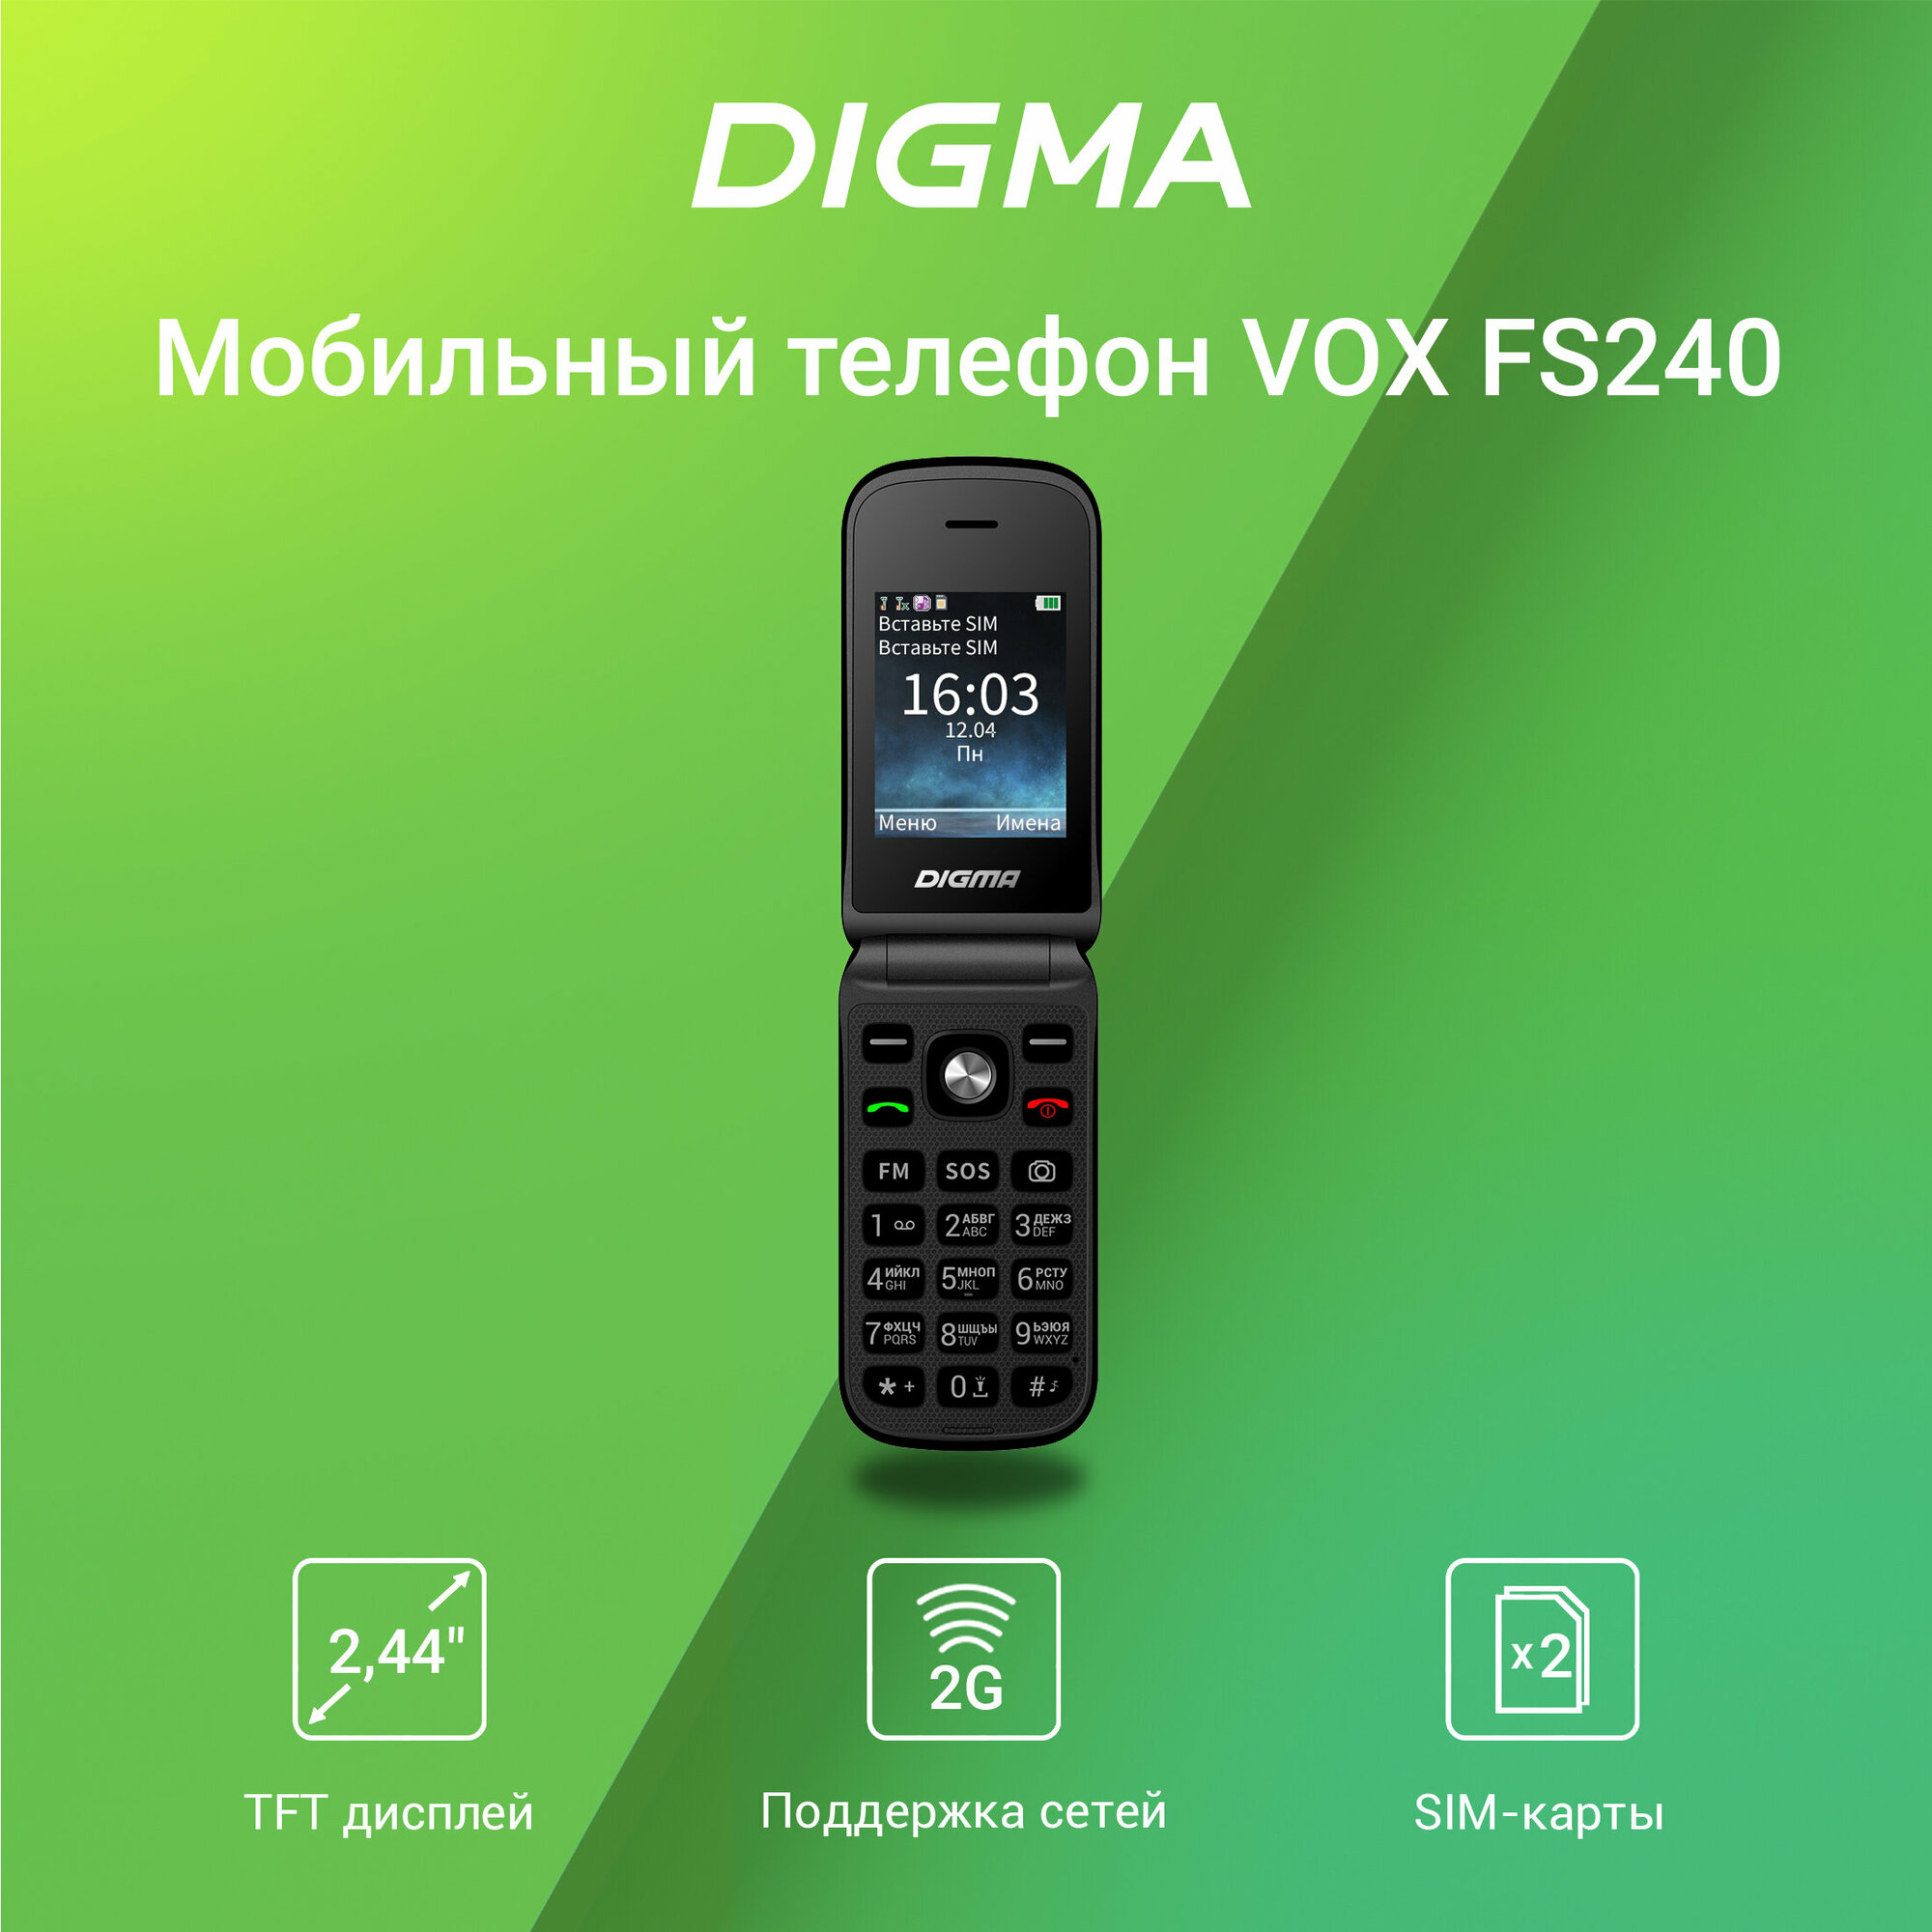 Мобильный телефон Digma VOX FS240 2G черный